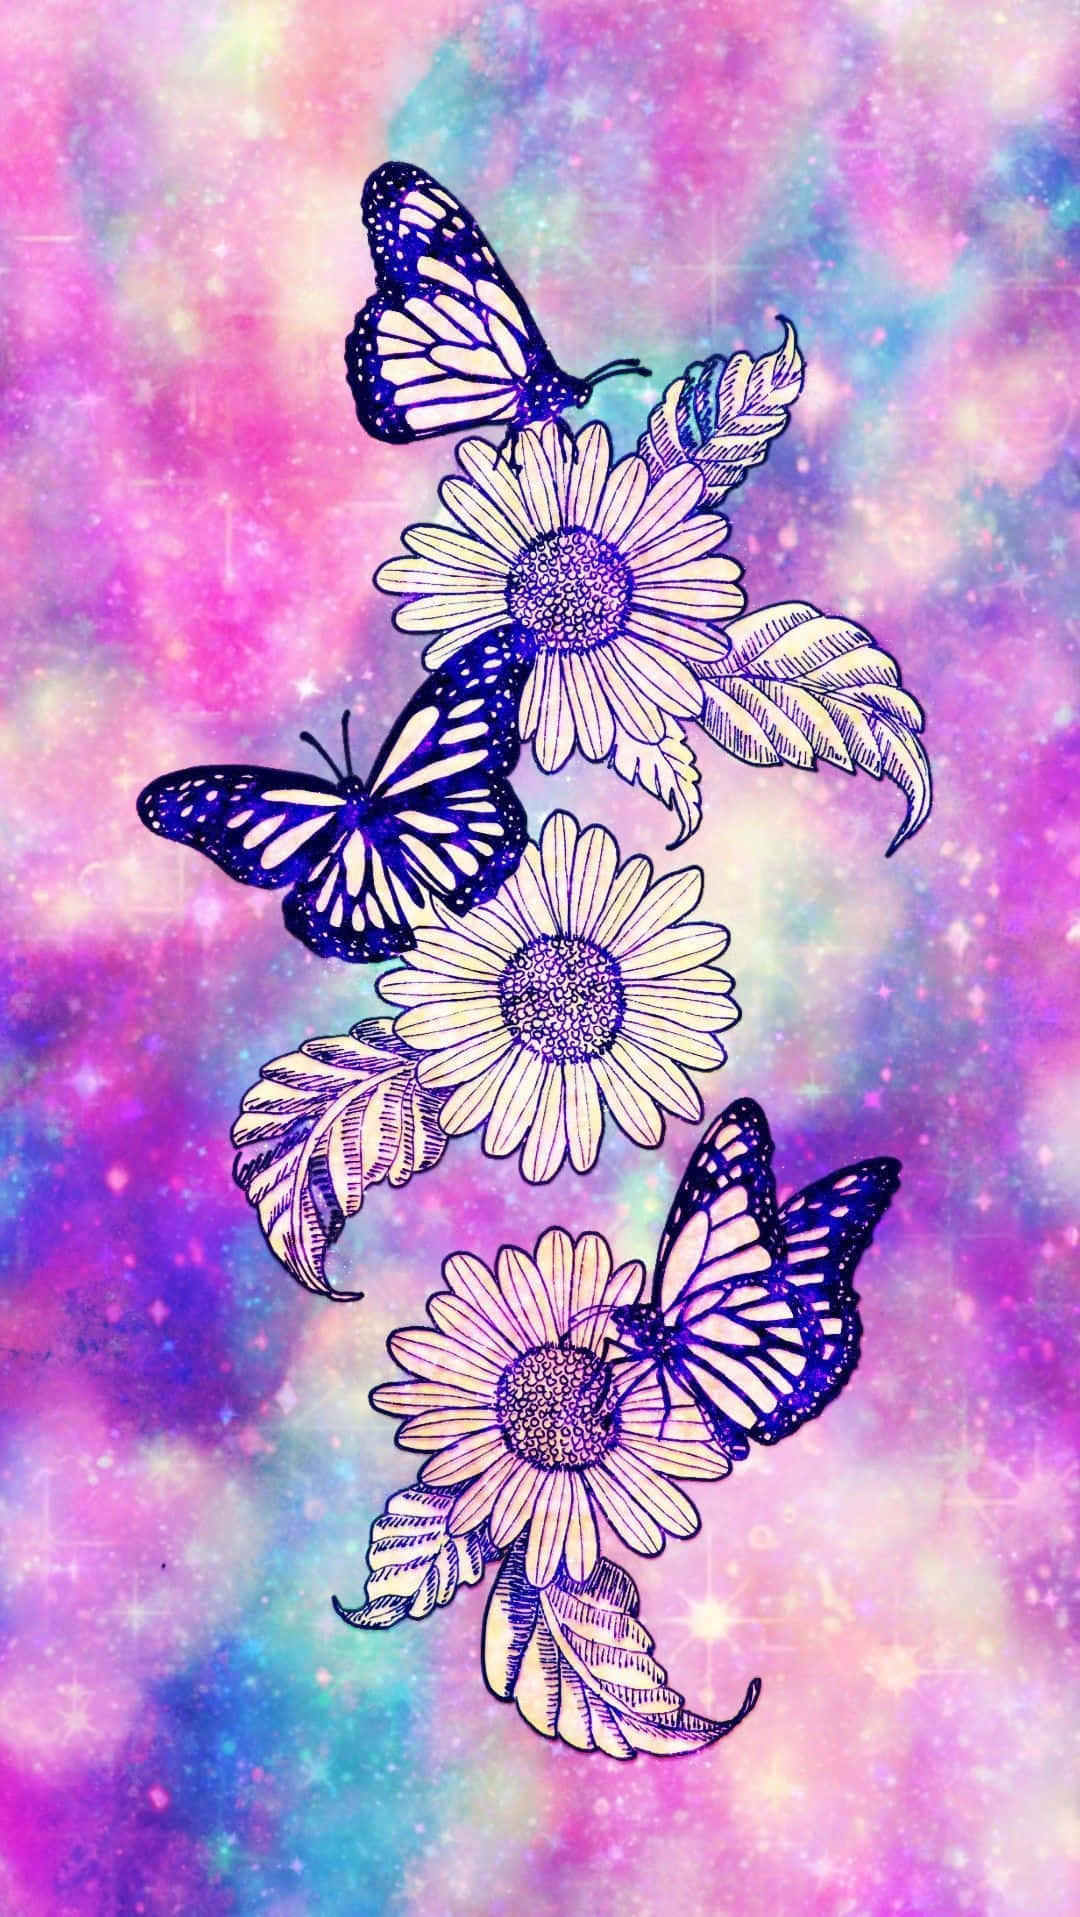 Sunflowers_ Butterflies_ Cosmic_ Backdrop.jpg Wallpaper